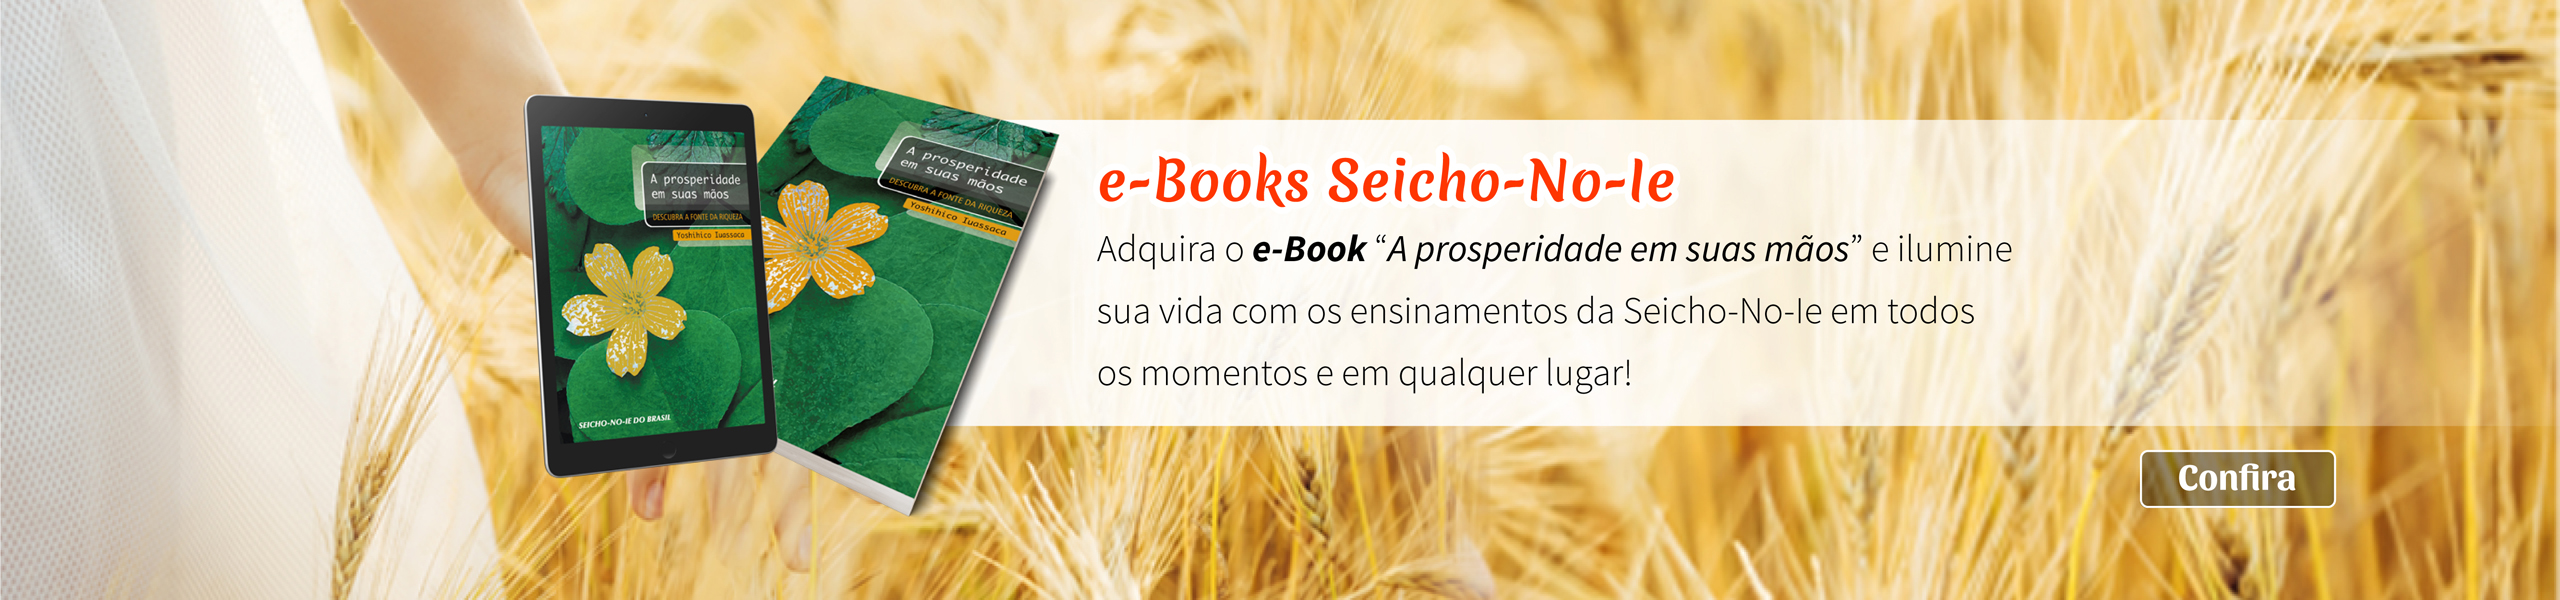 Banner e-books da Seicho-no-Ie